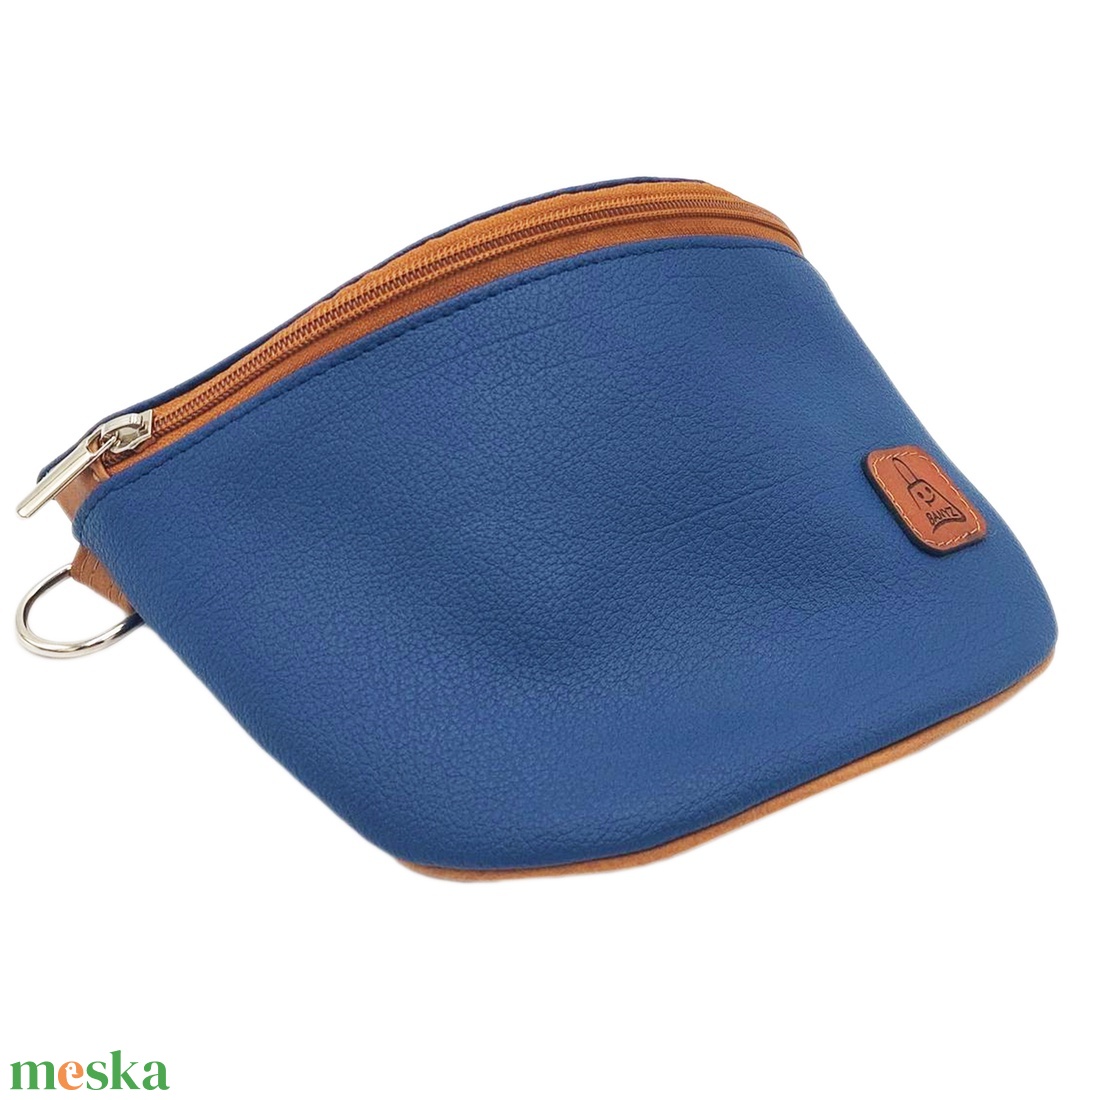 Keresztpántos táska, övtáska, kék- barna - táska & tok - kézitáska & válltáska - vállon átvethető táska - Meska.hu